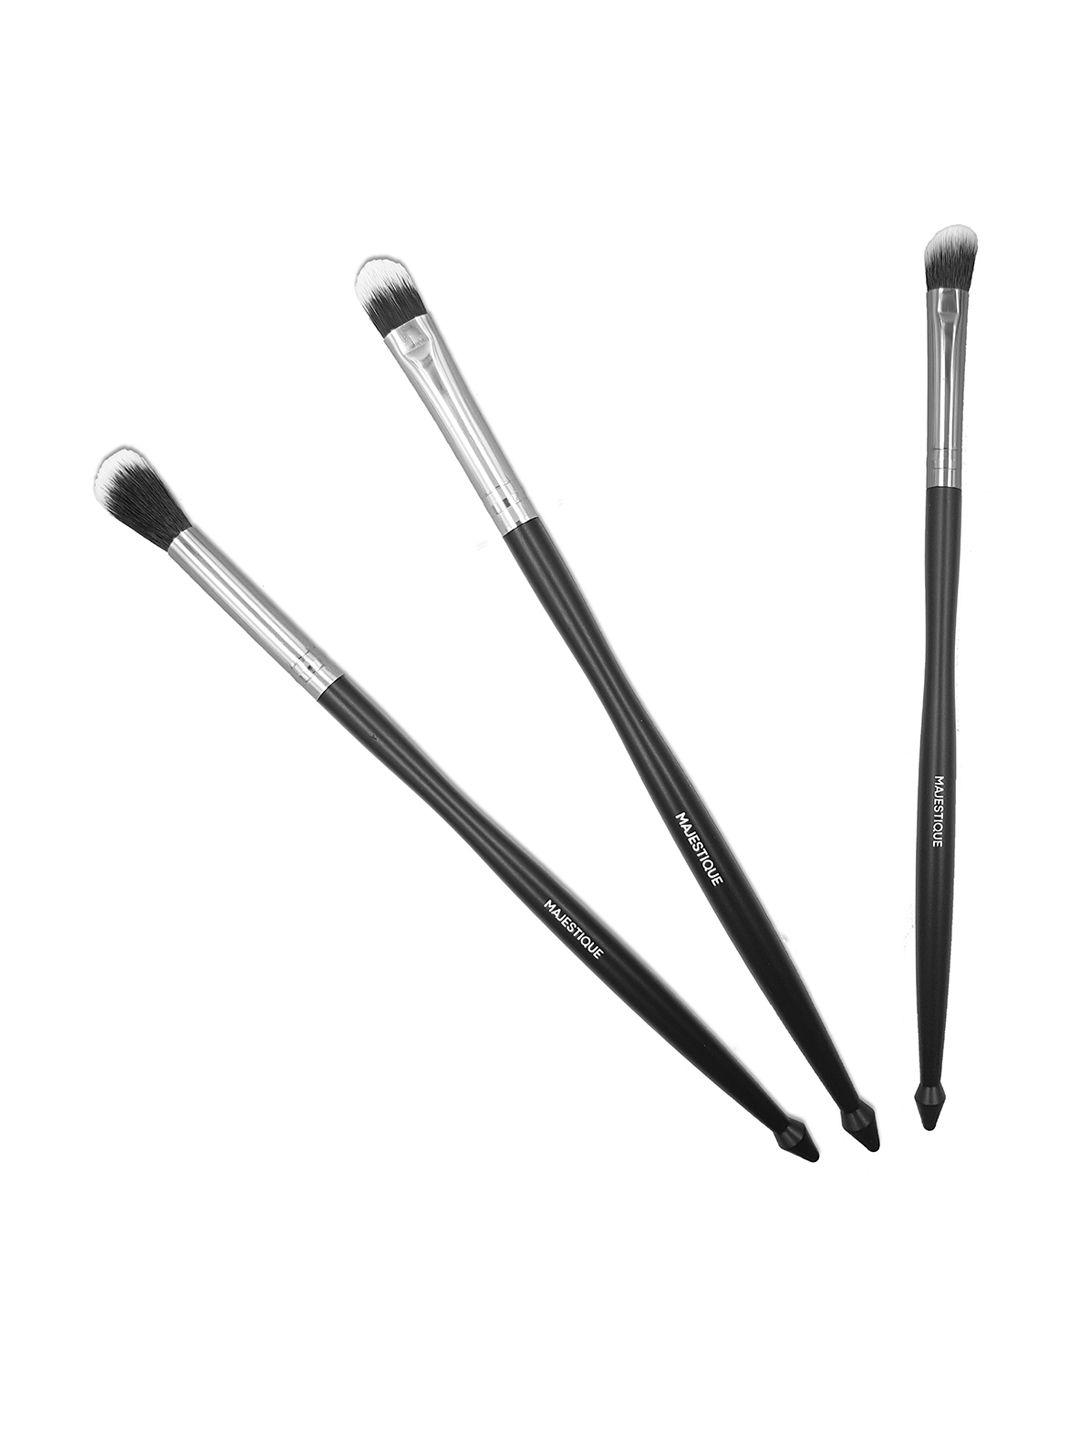 majestique black set of 3 makeup brushes